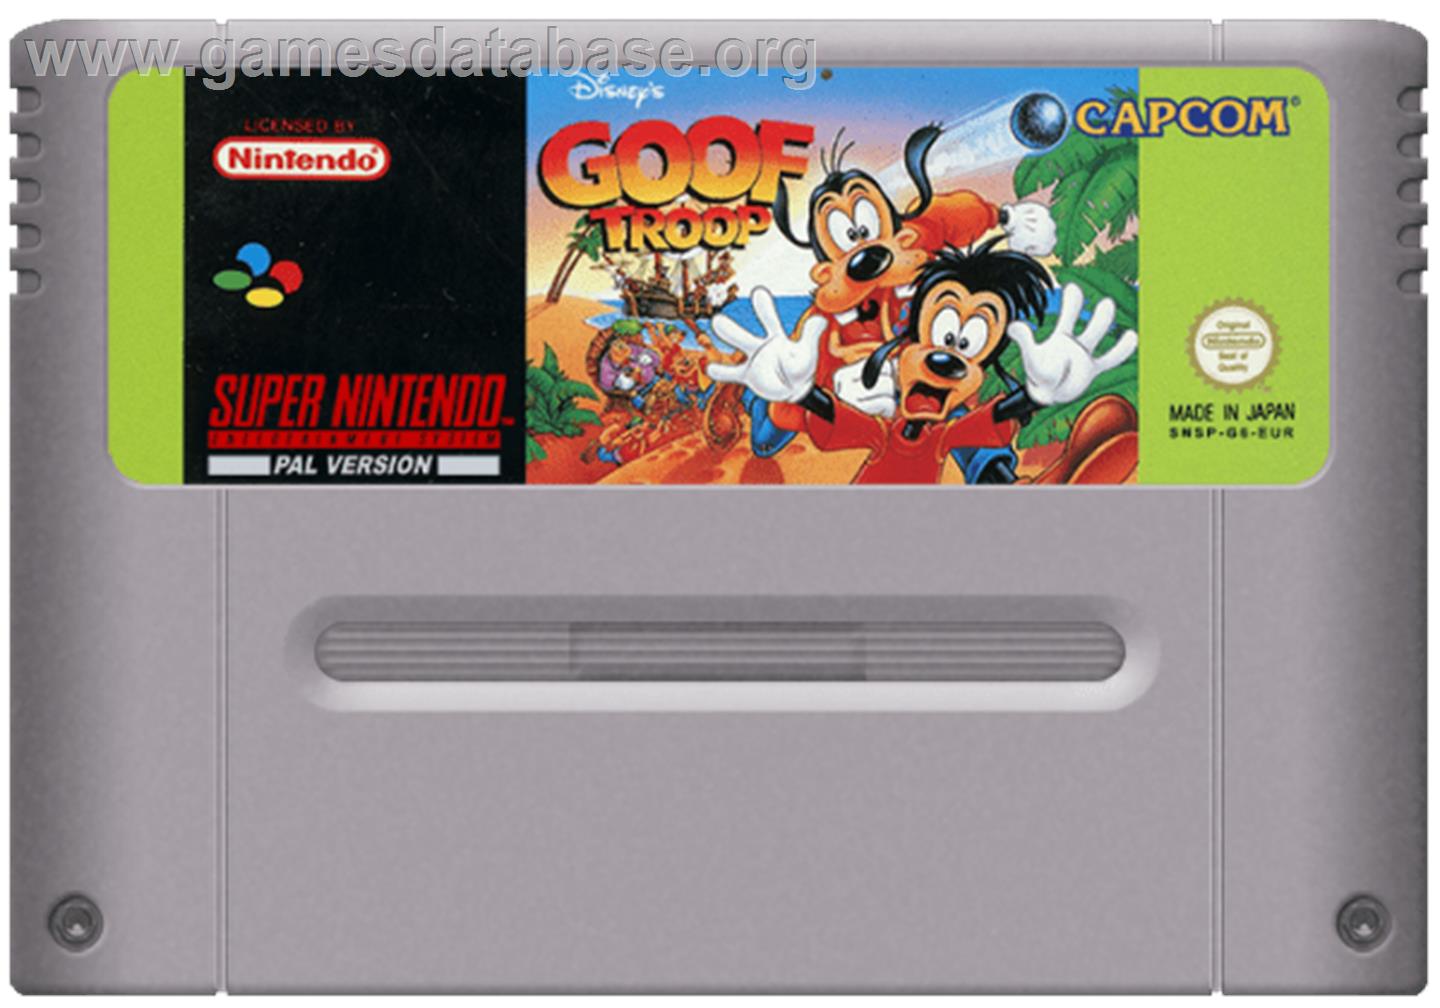 Goof Troop - Nintendo SNES - Artwork - Cartridge